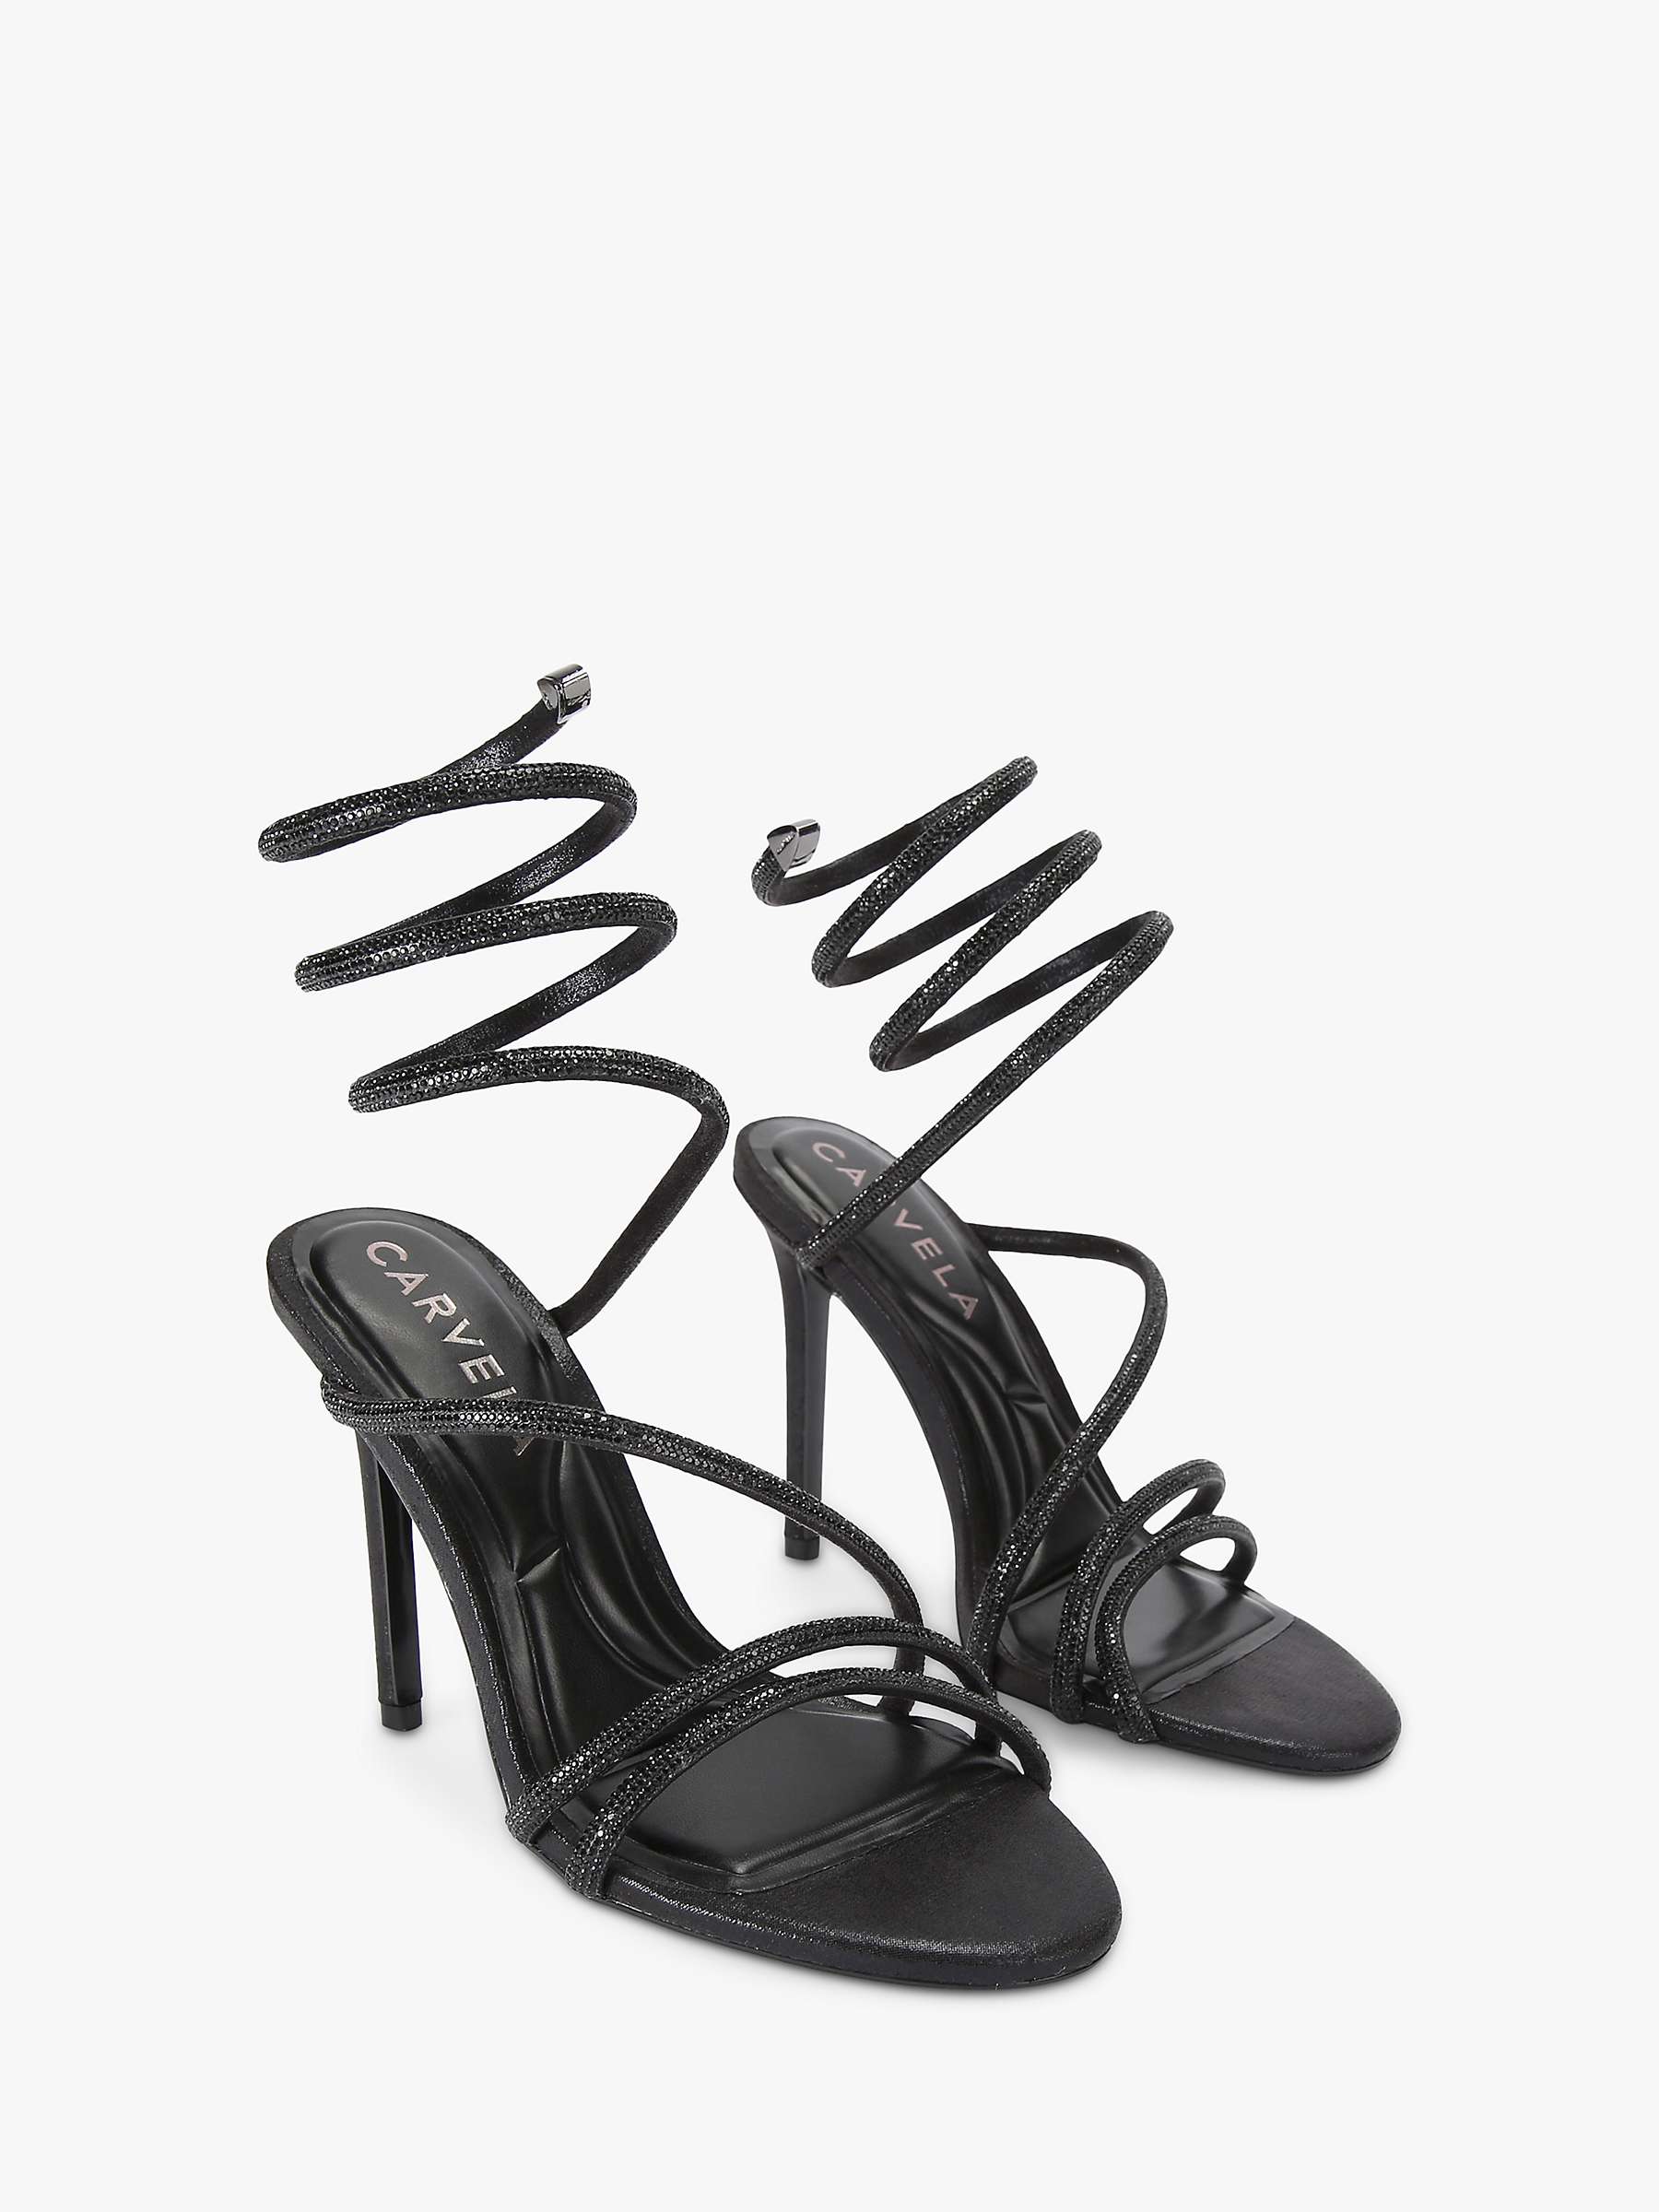 Buy Carvela Spiral Patent Heel Sandals, Black Online at johnlewis.com